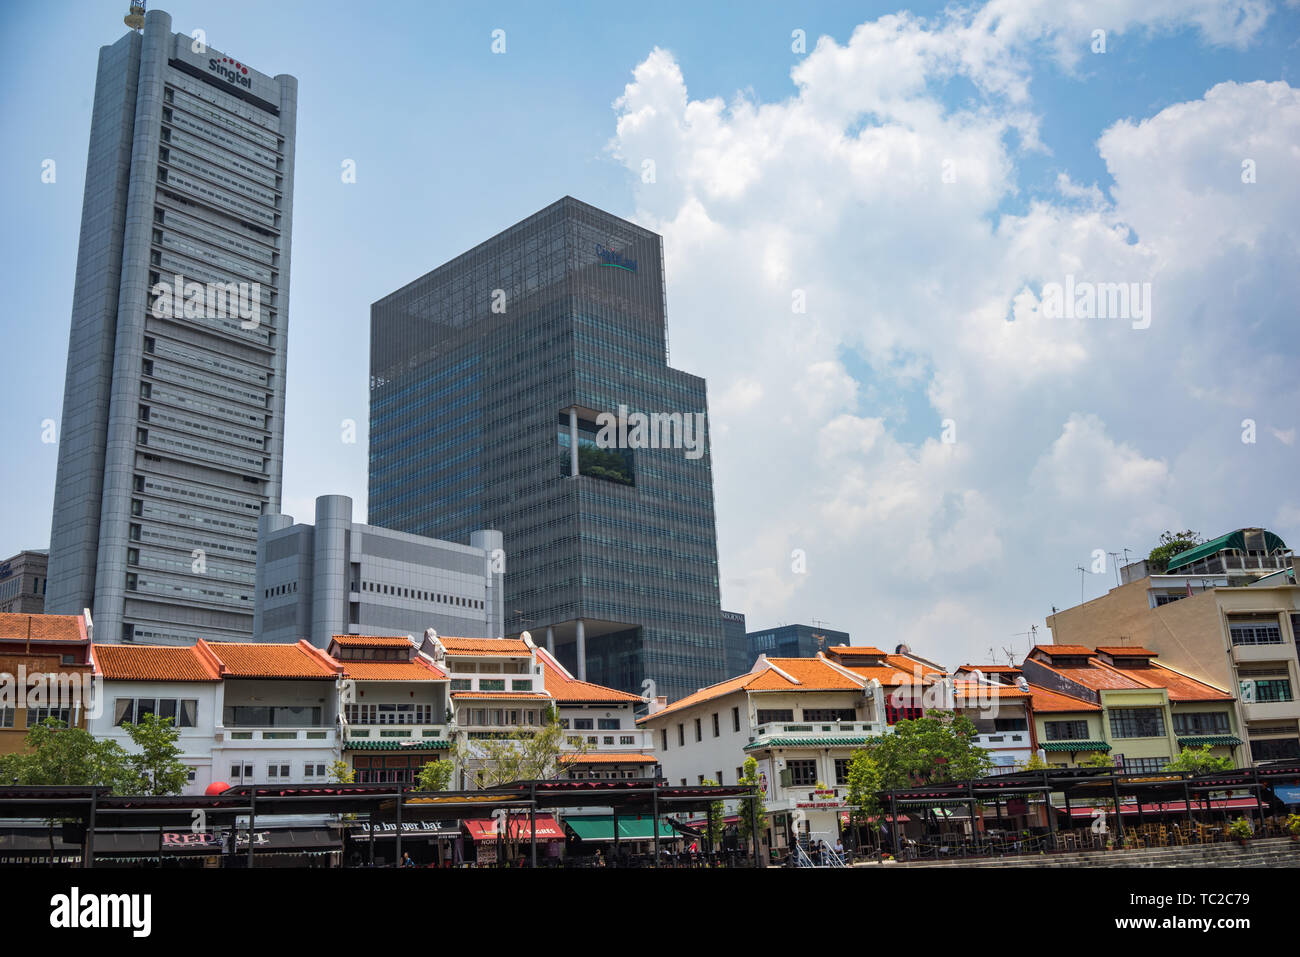 Marina Bay in Singapore Stock Photo